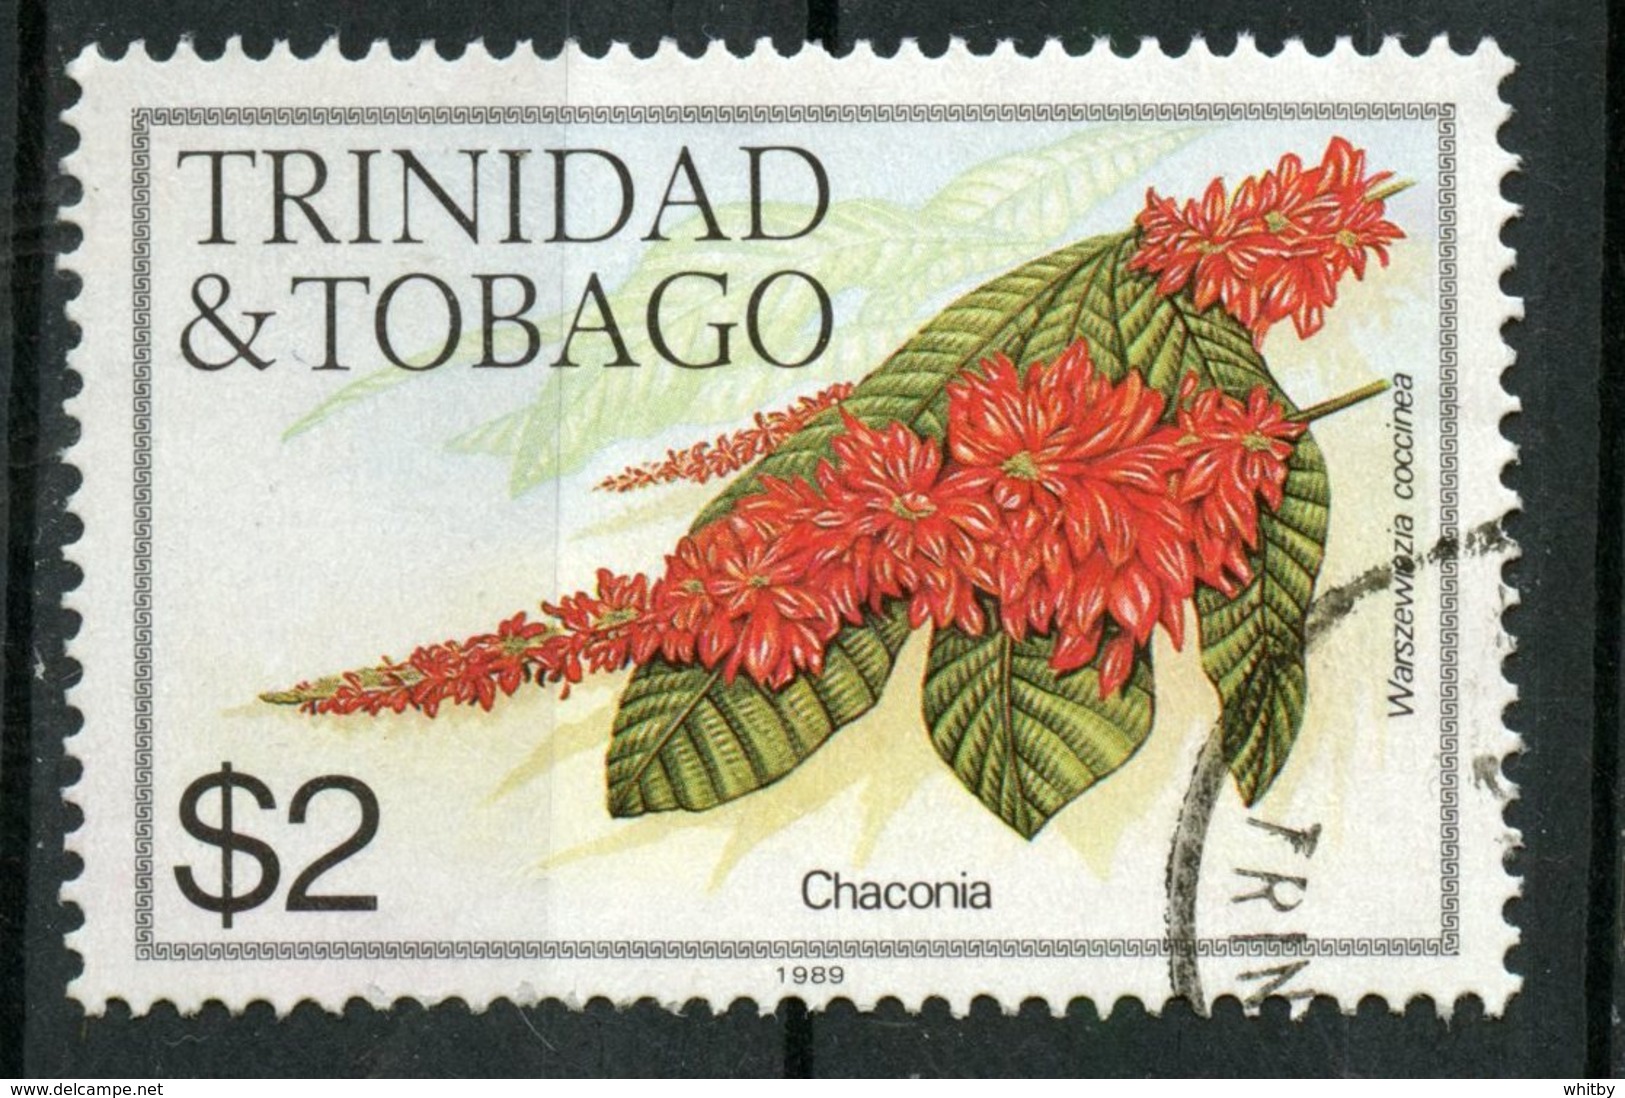 Trinidad And Tobago 1989 $2.00  Chaconia Issue #404j  Stamp Is Used - Trinidad & Tobago (1962-...)